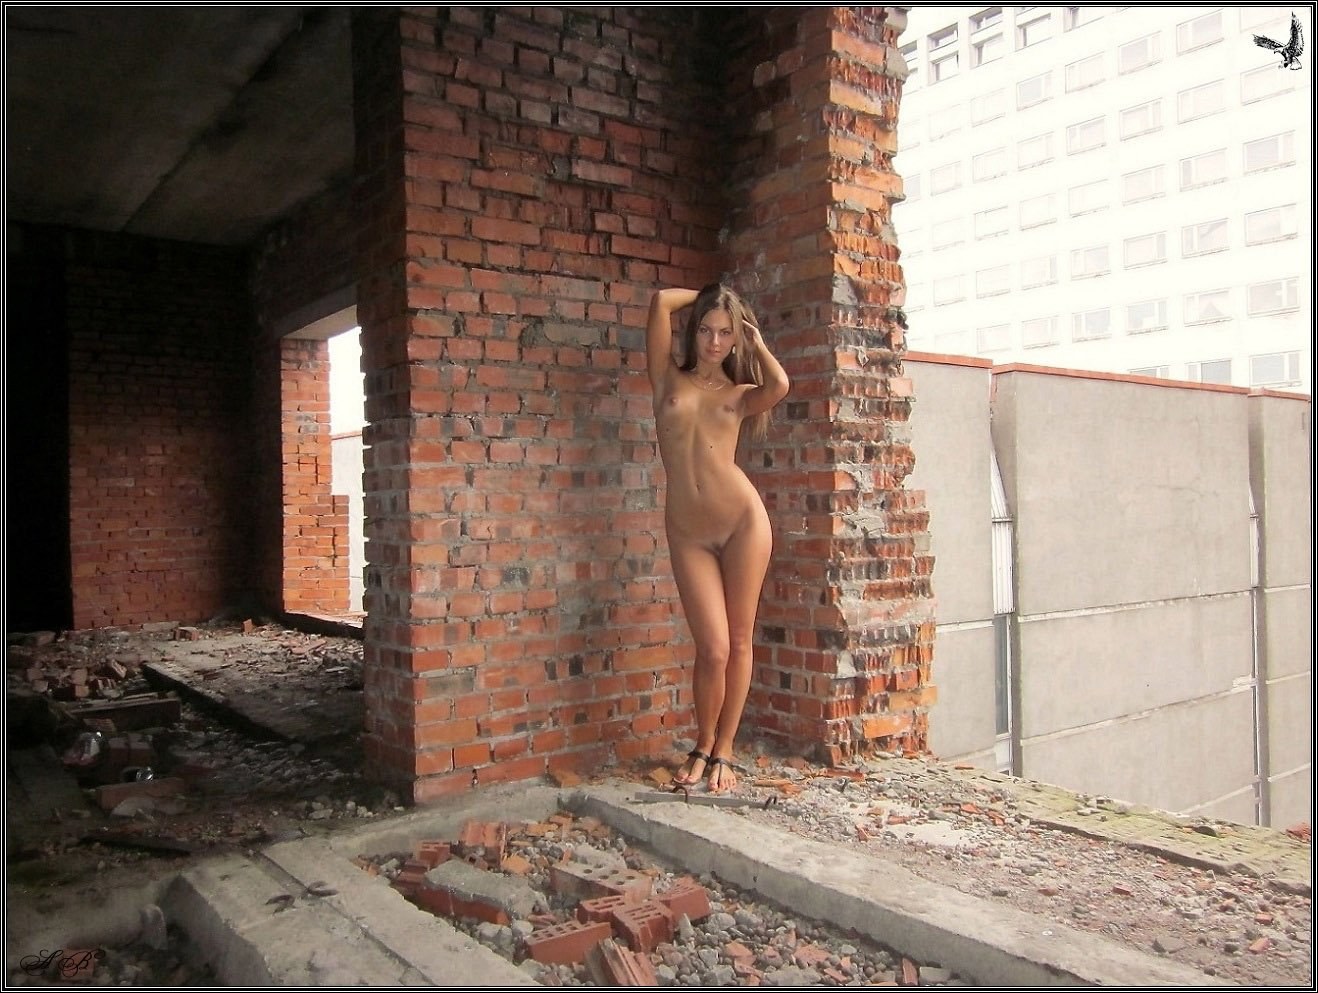 Девка разделась в заброшенном здании (15 фото эротики)